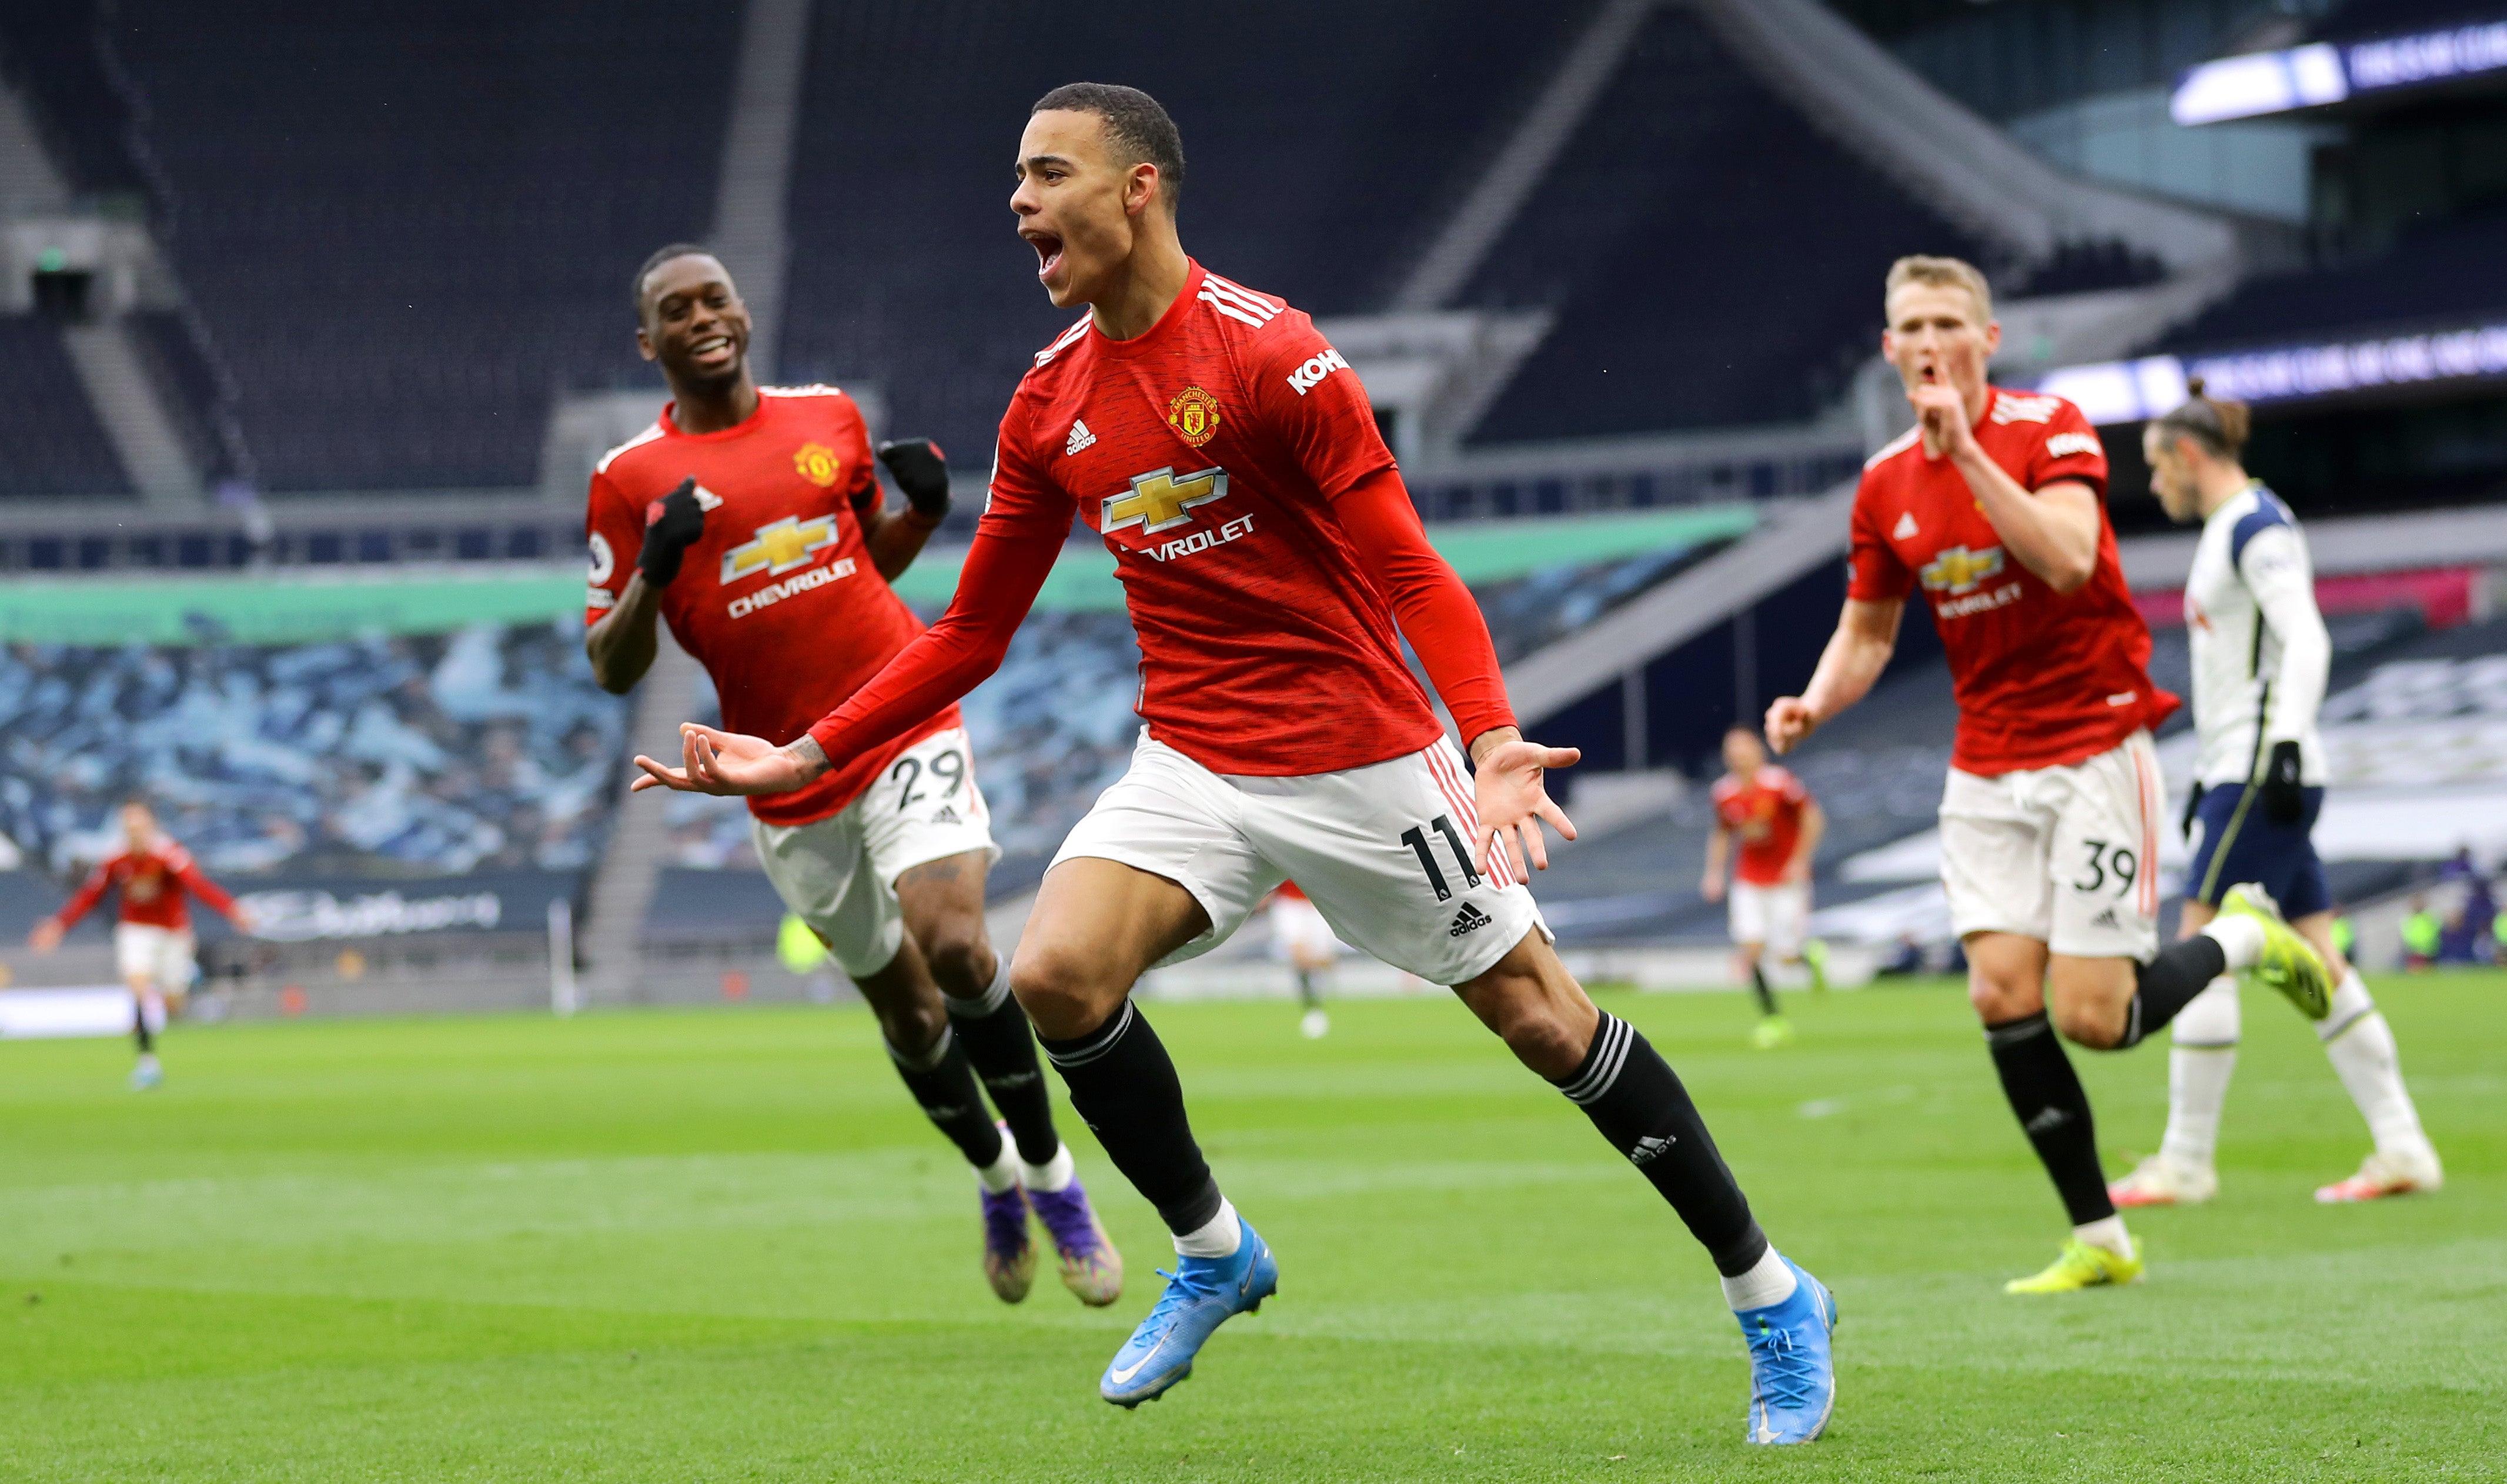 Mason Greenwood celebrates after scoring United’s third